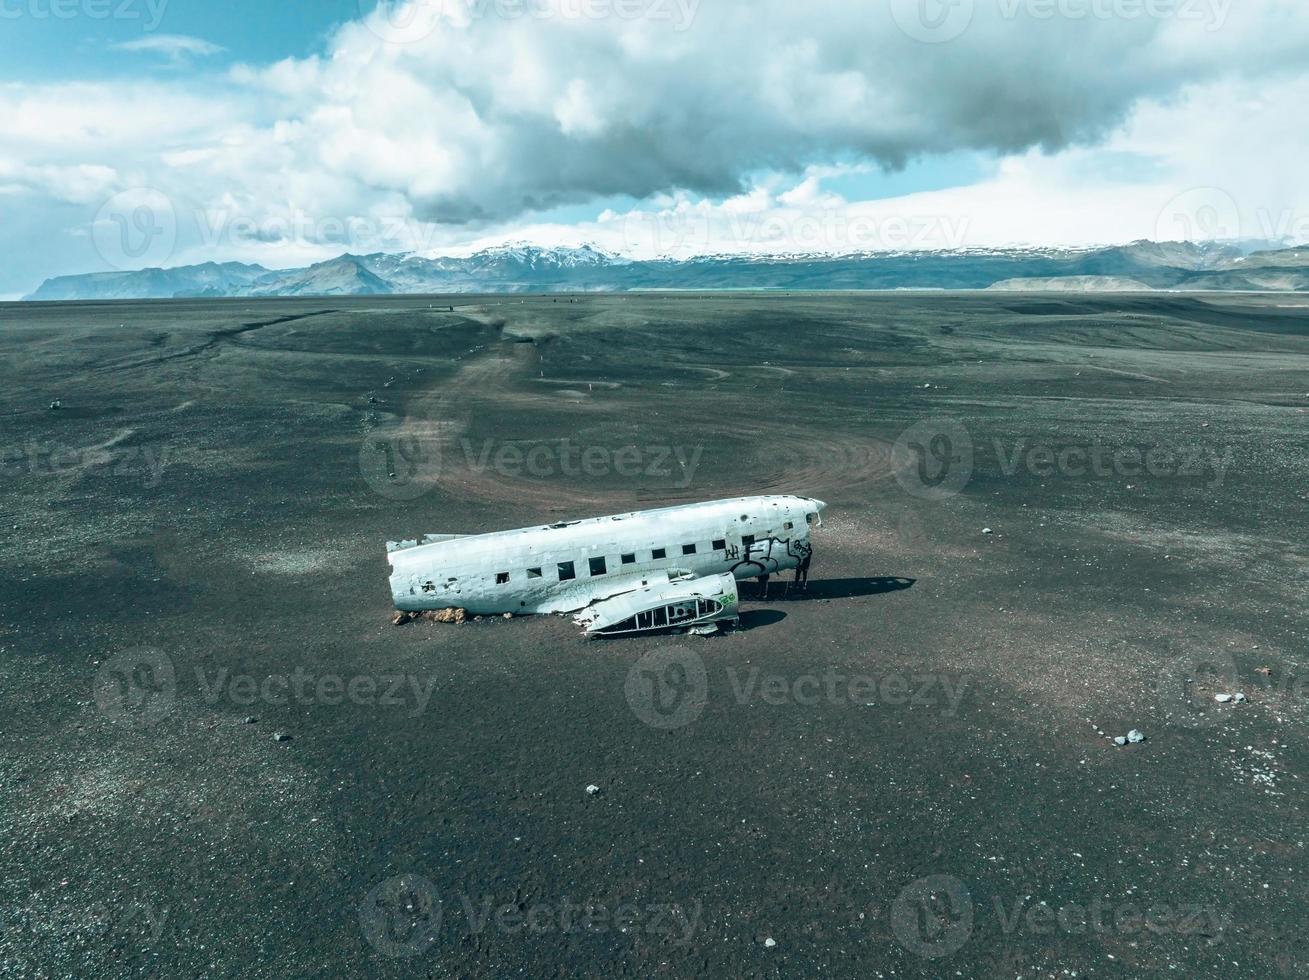 vue aérienne de l'ancien avion écrasé abandonné sur la plage de solheimasandur près de vik, islande. photo